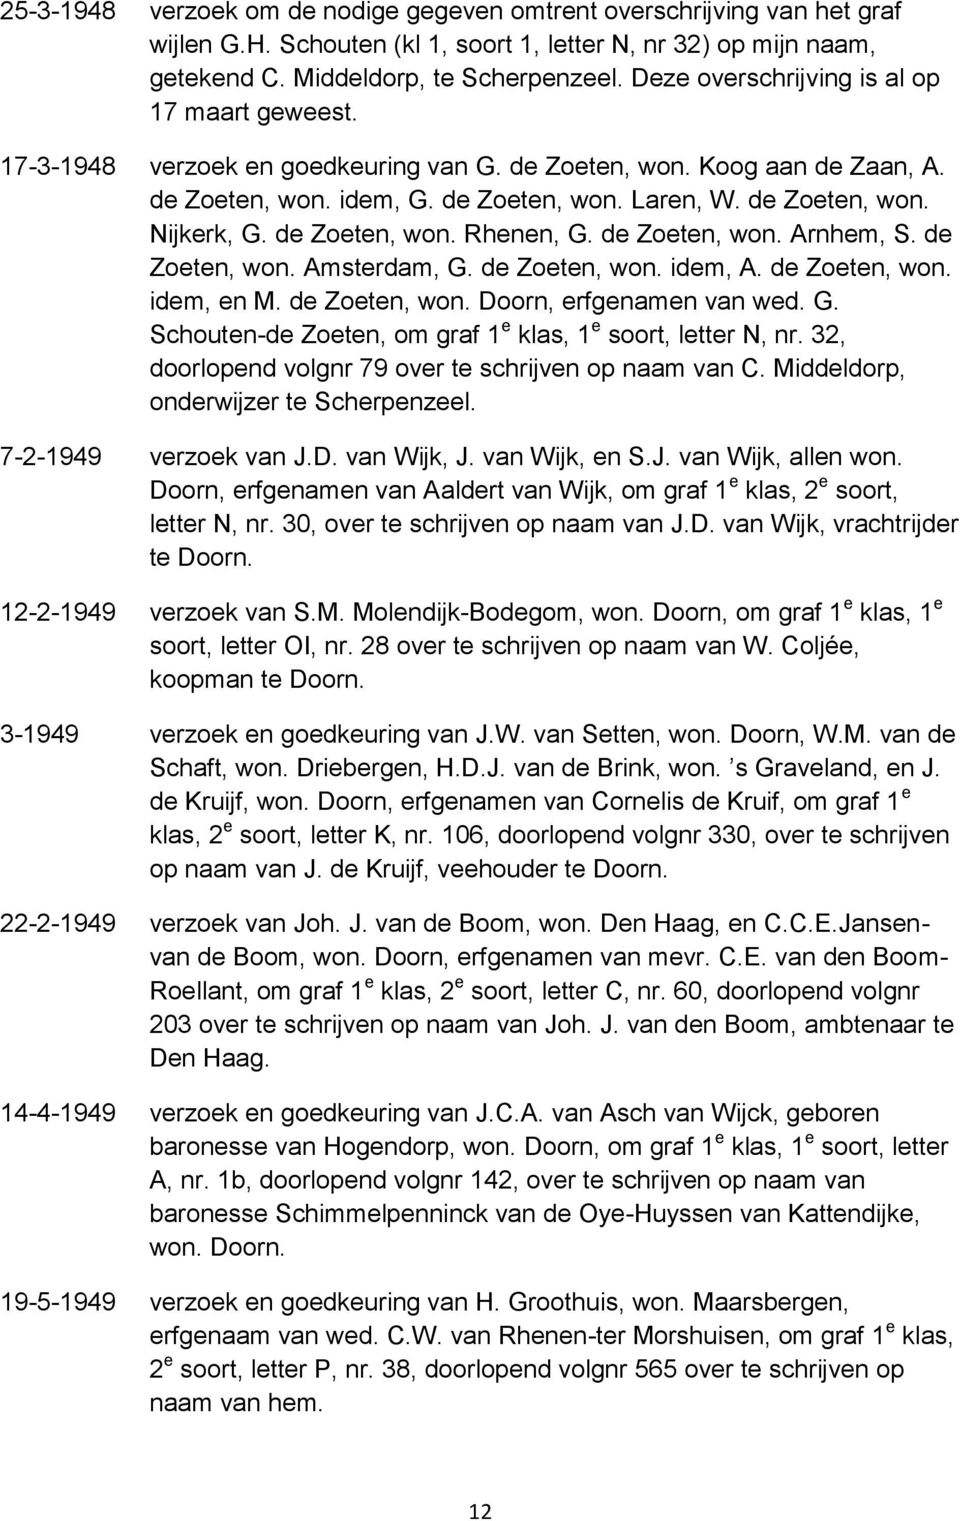 de Zoeten, won. Rhenen, G. de Zoeten, won. Arnhem, S. de Zoeten, won. Amsterdam, G. de Zoeten, won. idem, A. de Zoeten, won. idem, en M. de Zoeten, won. Doorn, erfgenamen van wed. G. Schouten-de Zoeten, om graf 1 e klas, 1 e soort, letter N, nr.